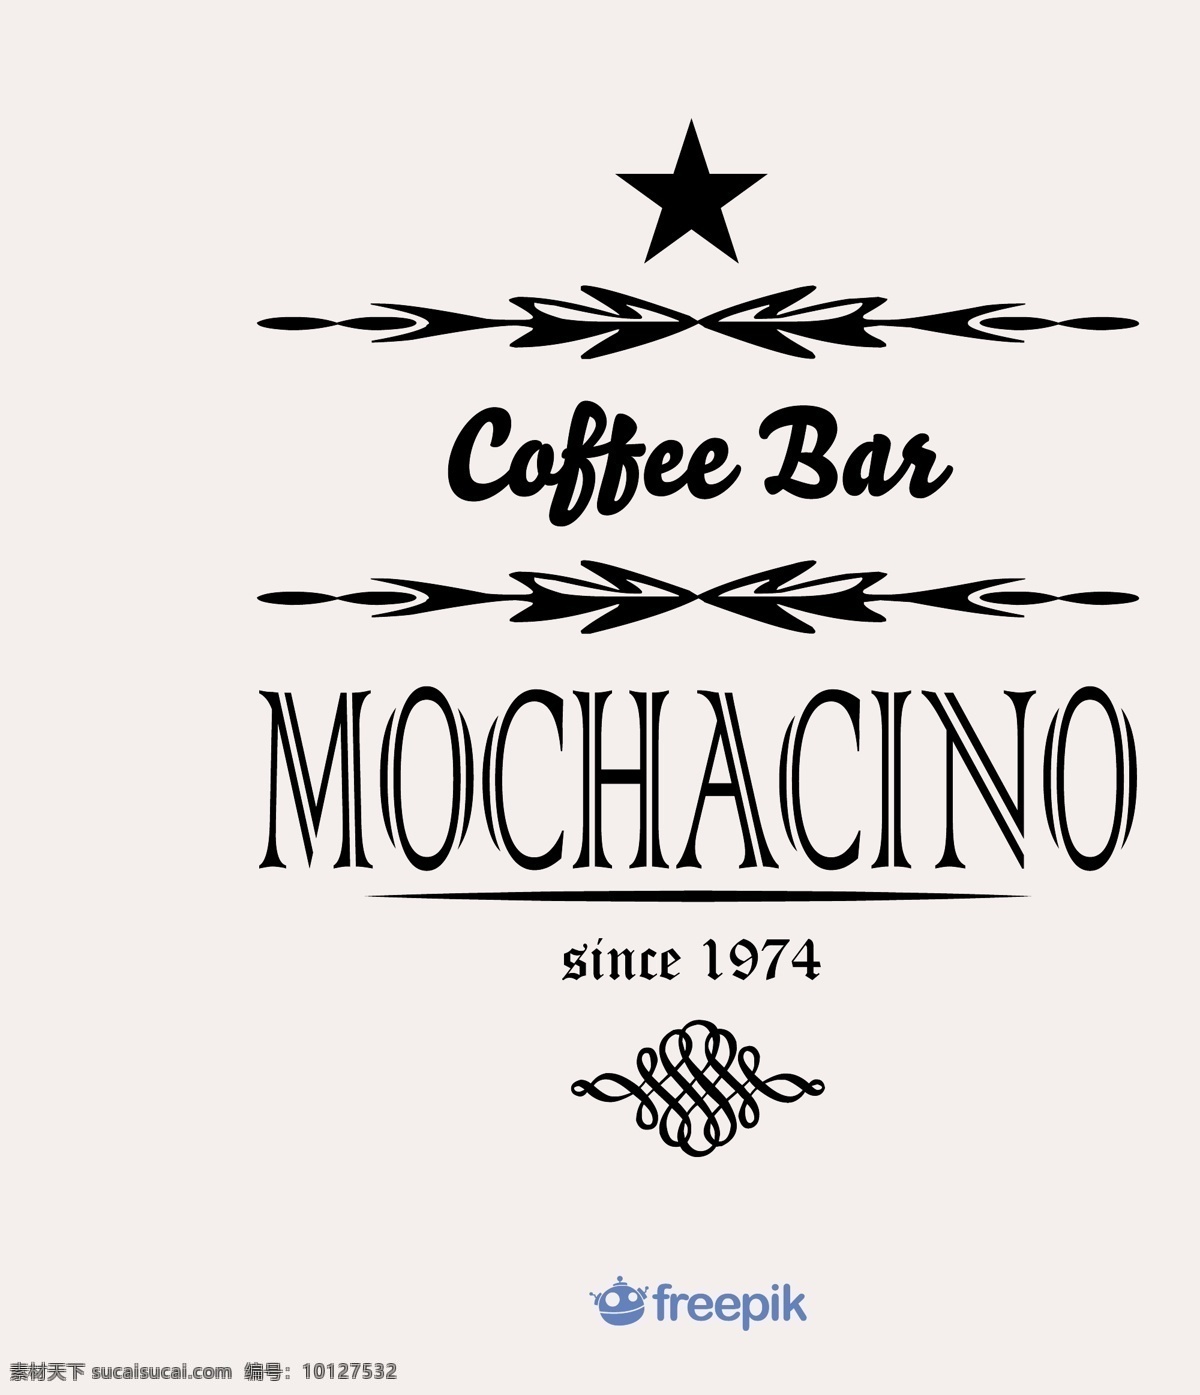 咖啡吧 mochacino 旗帜 明星 徽章 奖章 咖啡店 酒吧 竖旗帜 垂直 咖啡酒吧 白色